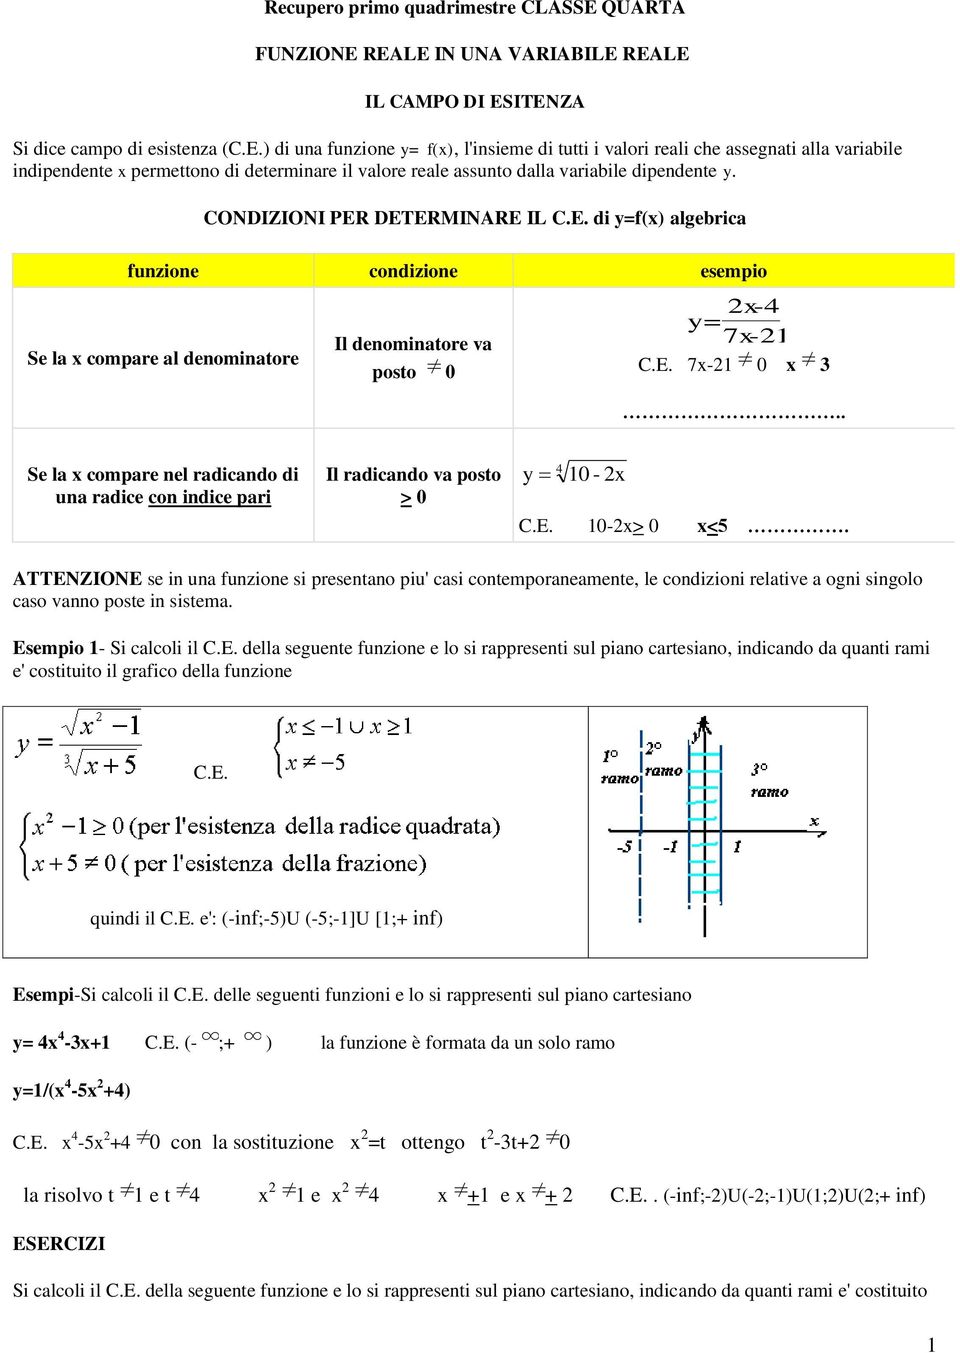 CONDIZIONI PER DETERMINARE IL C.E. di =f() algebrica funzione condizione esempio Se la compare al denominatore Il denominatore va posto 0 - = 7-1 C.E. 7-1 0 3.